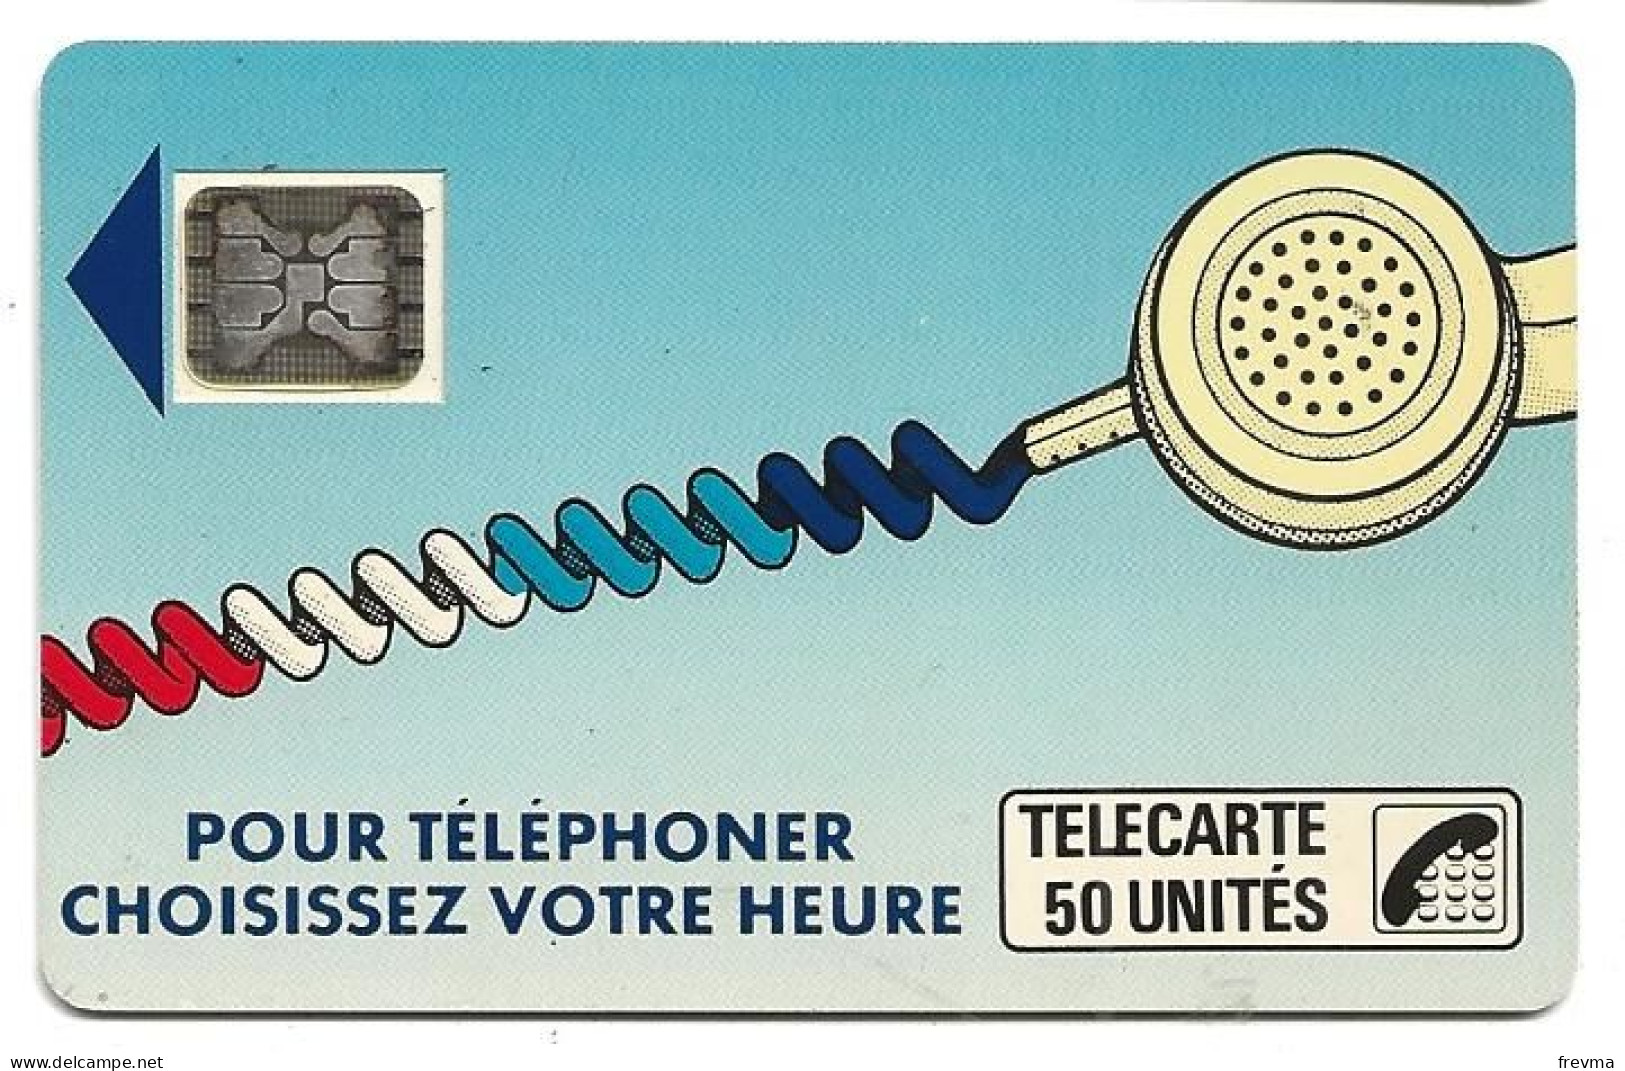 Telecarte K 32 50 Unités SC5an - Telefonschnur (Cordon)